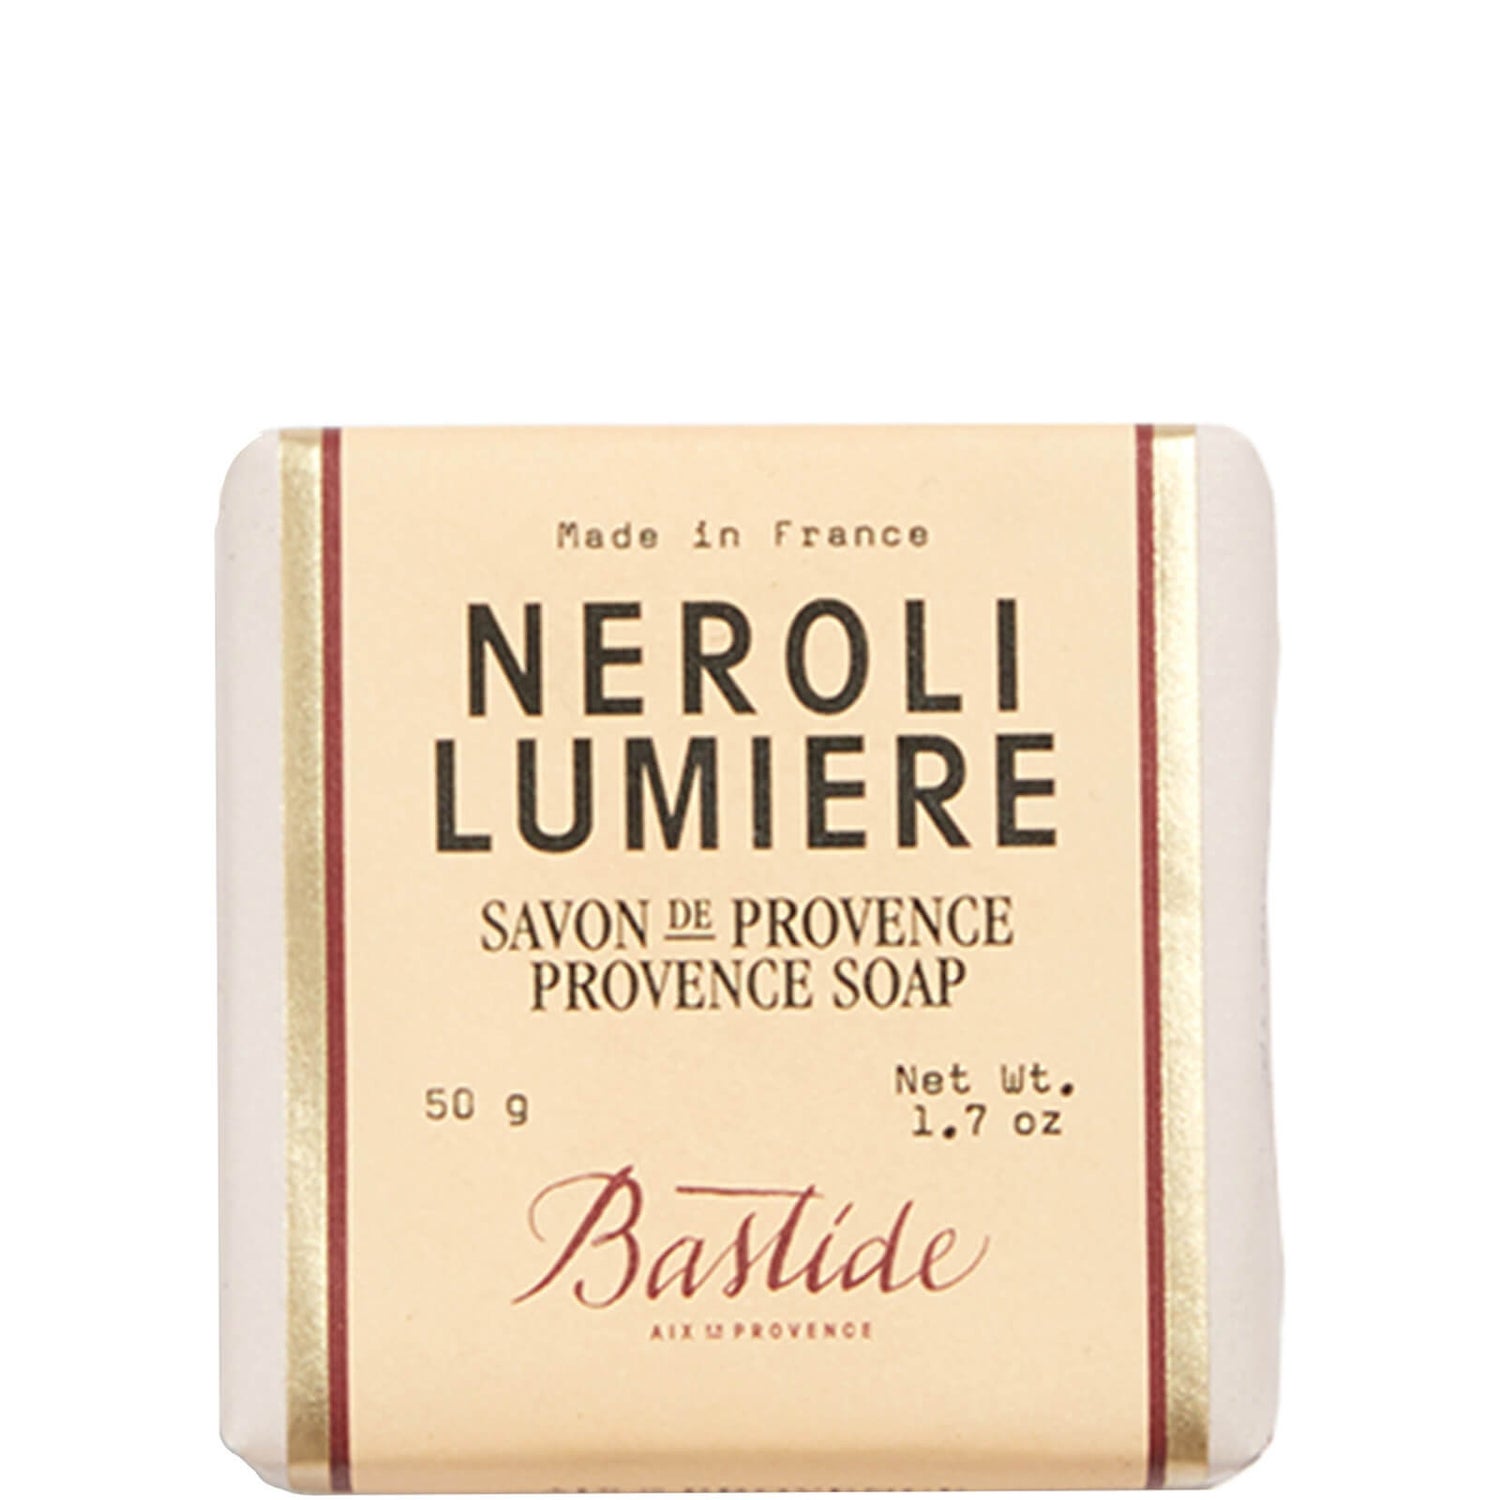 Bastide Neroli Lumiere Provence Soap